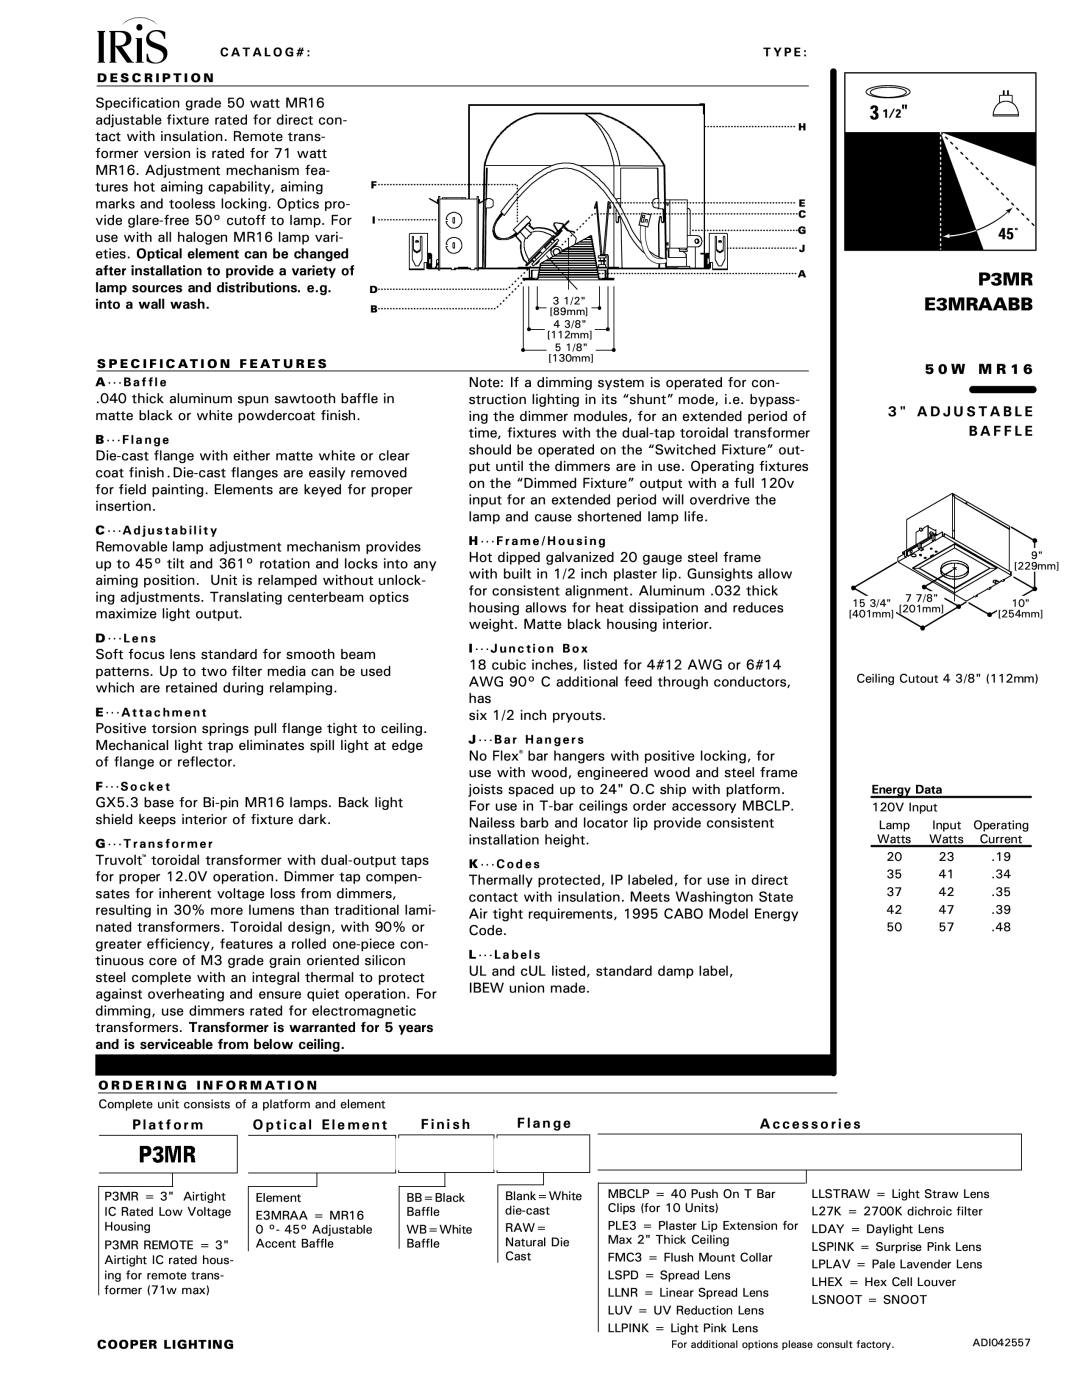 Cooper Lighting P3MR manual   